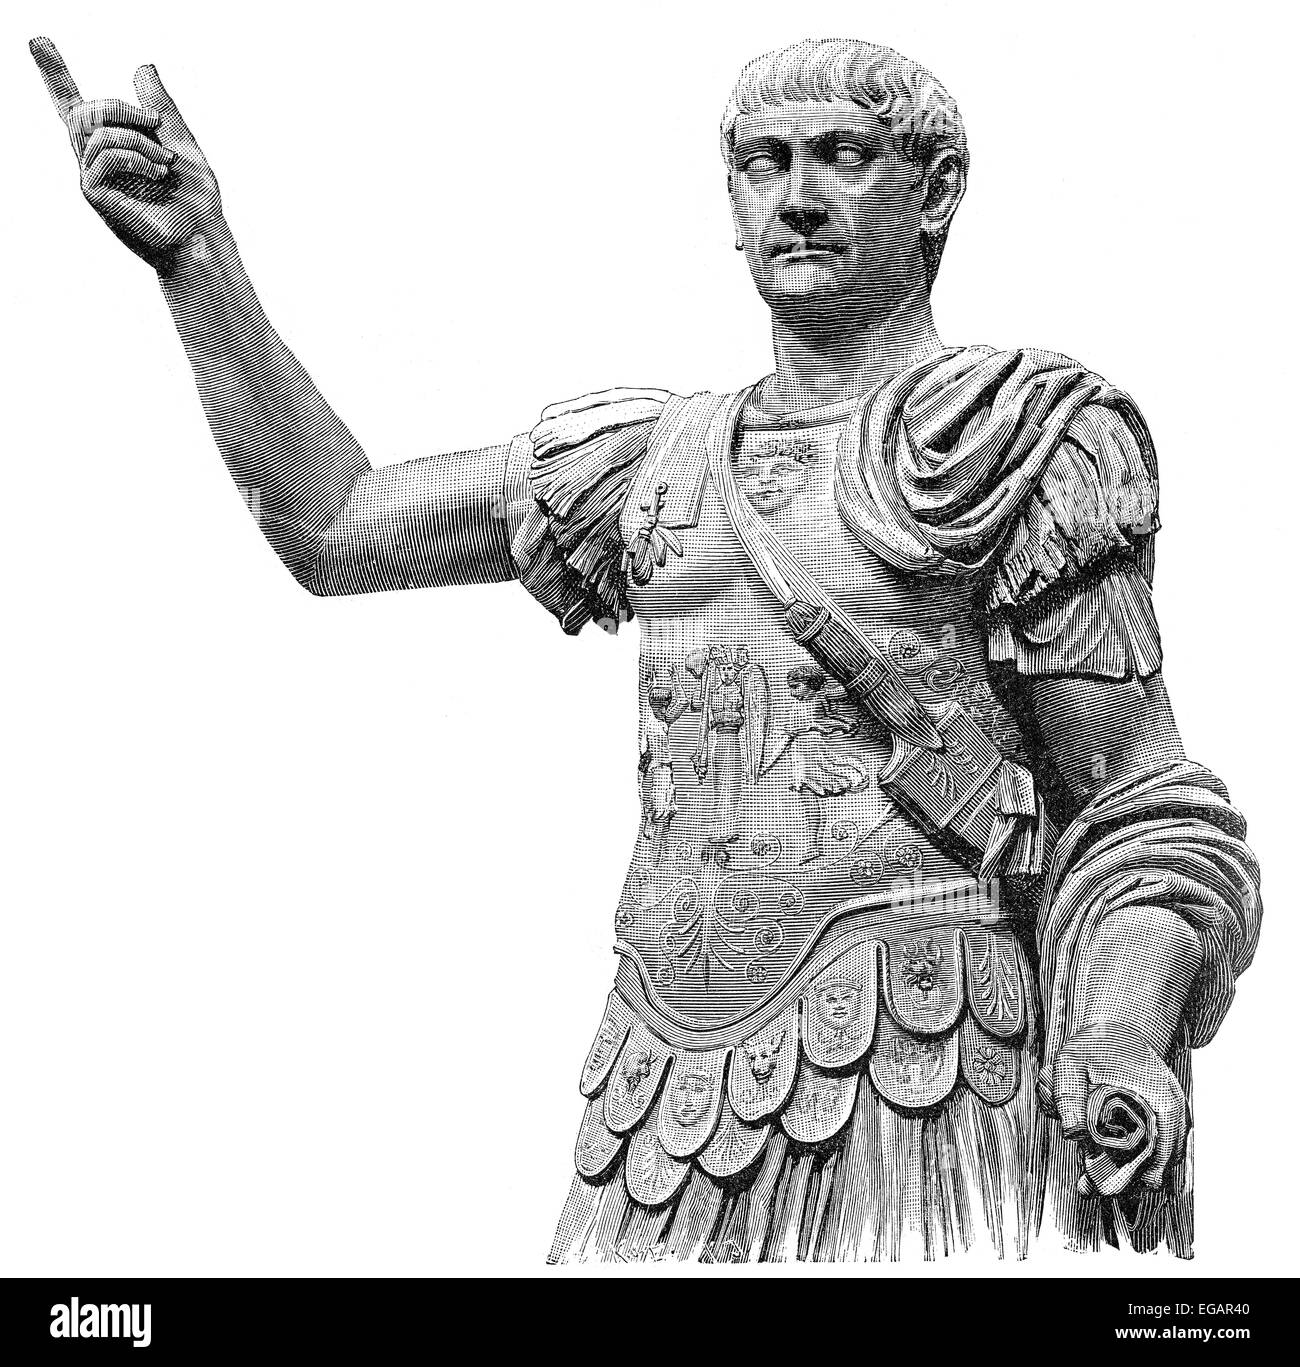 Trajan, Marcus Ulpius Traianus, Imperator Caesar Nerva Traianus Divi Nervae Filius Augustus; 53 - 117, römischer Kaiser Stockfoto